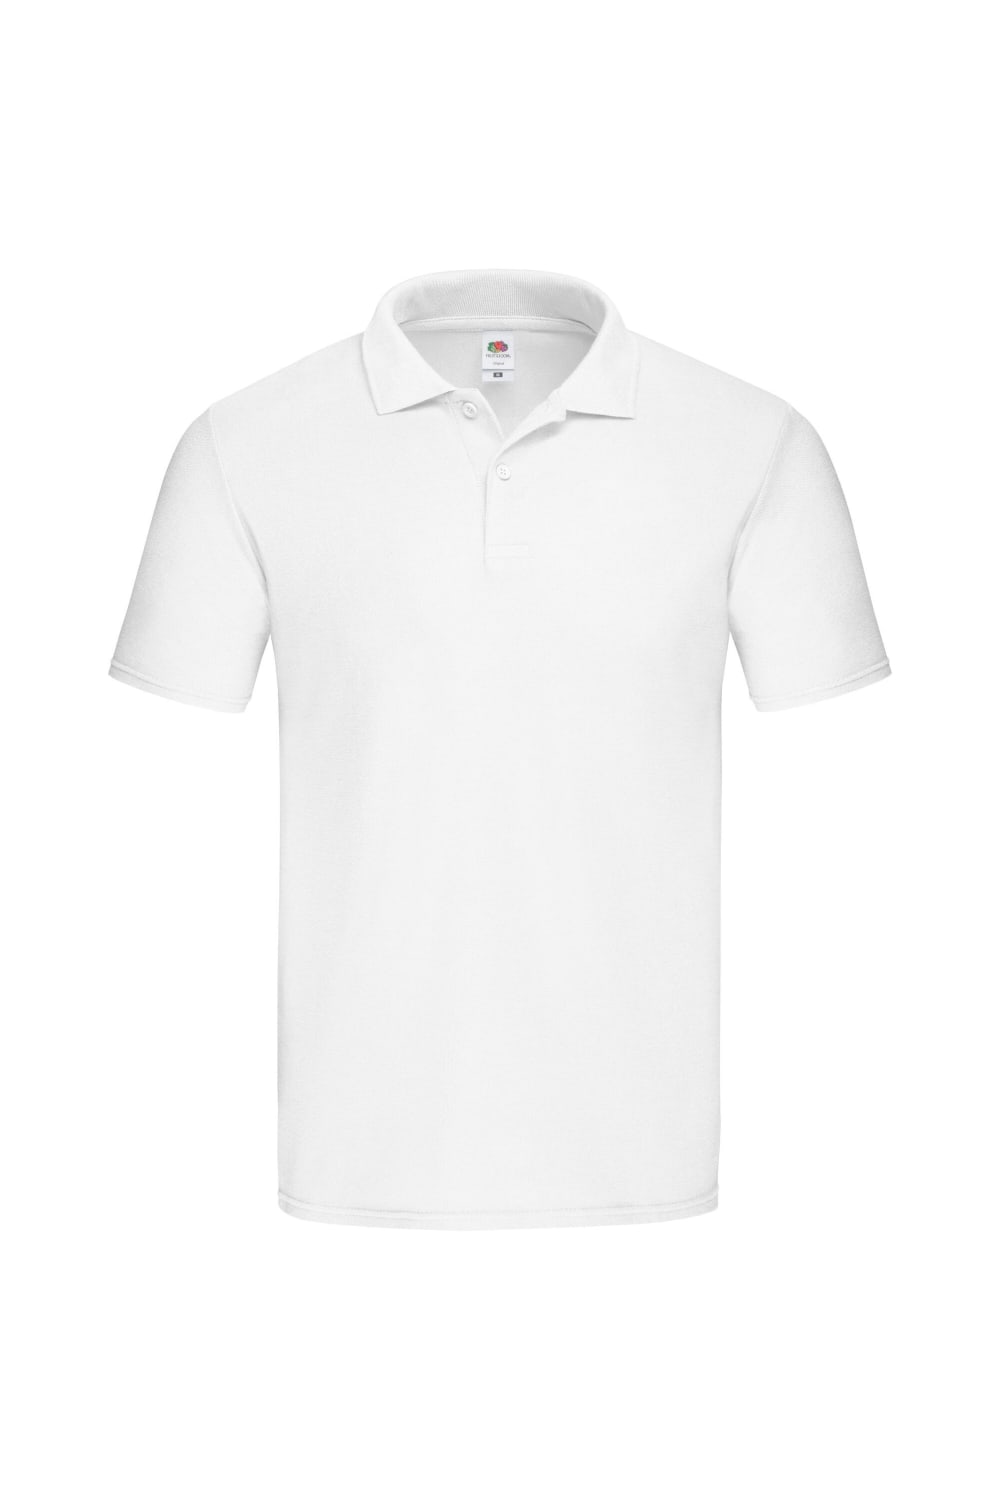 Fruit of the Loom Mens Original Polo Shirt (White)